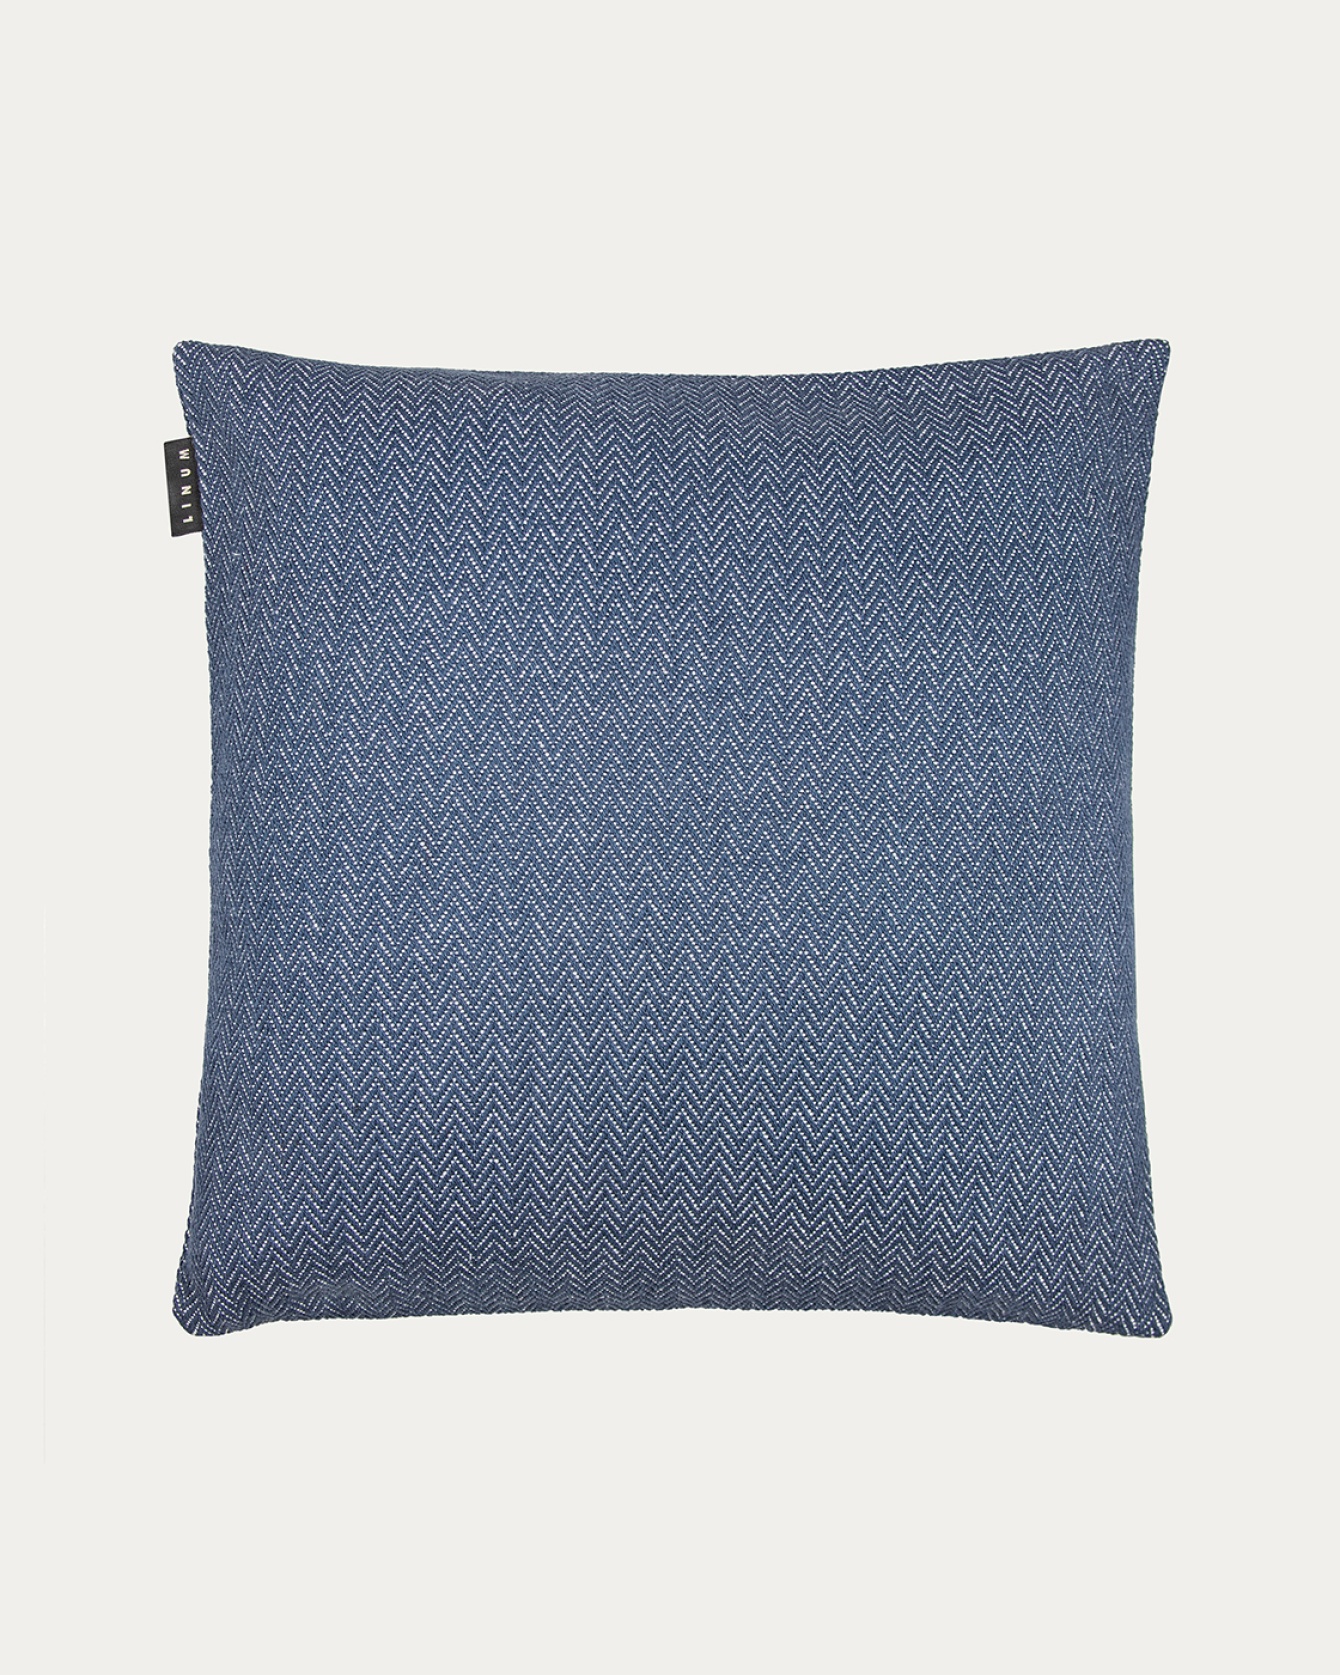 Produktbild tintenblau SHEPARD Kissenhülle aus weicher Baumwolle mit dezentem Fischgrätmuster von LINUM DESIGN. Größe 50x50 cm.